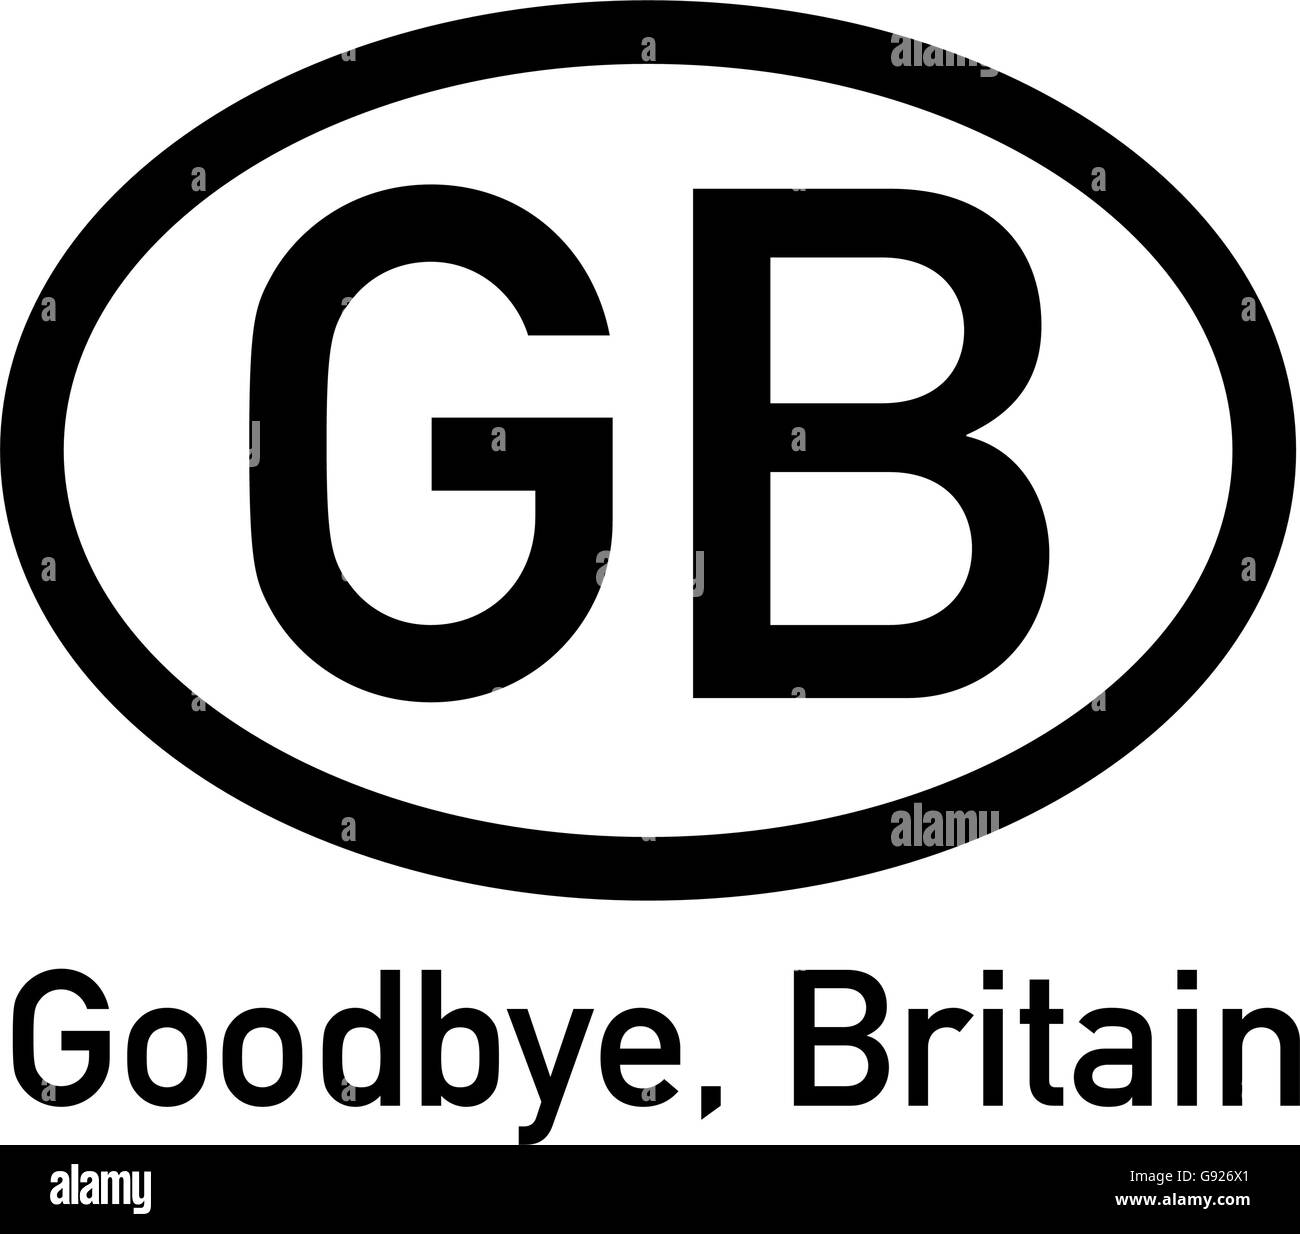 BREXIT Symbol - Großbritannien Nationalität Schild mit Subline "Goodbye, Großbritannien" Stock Vektor